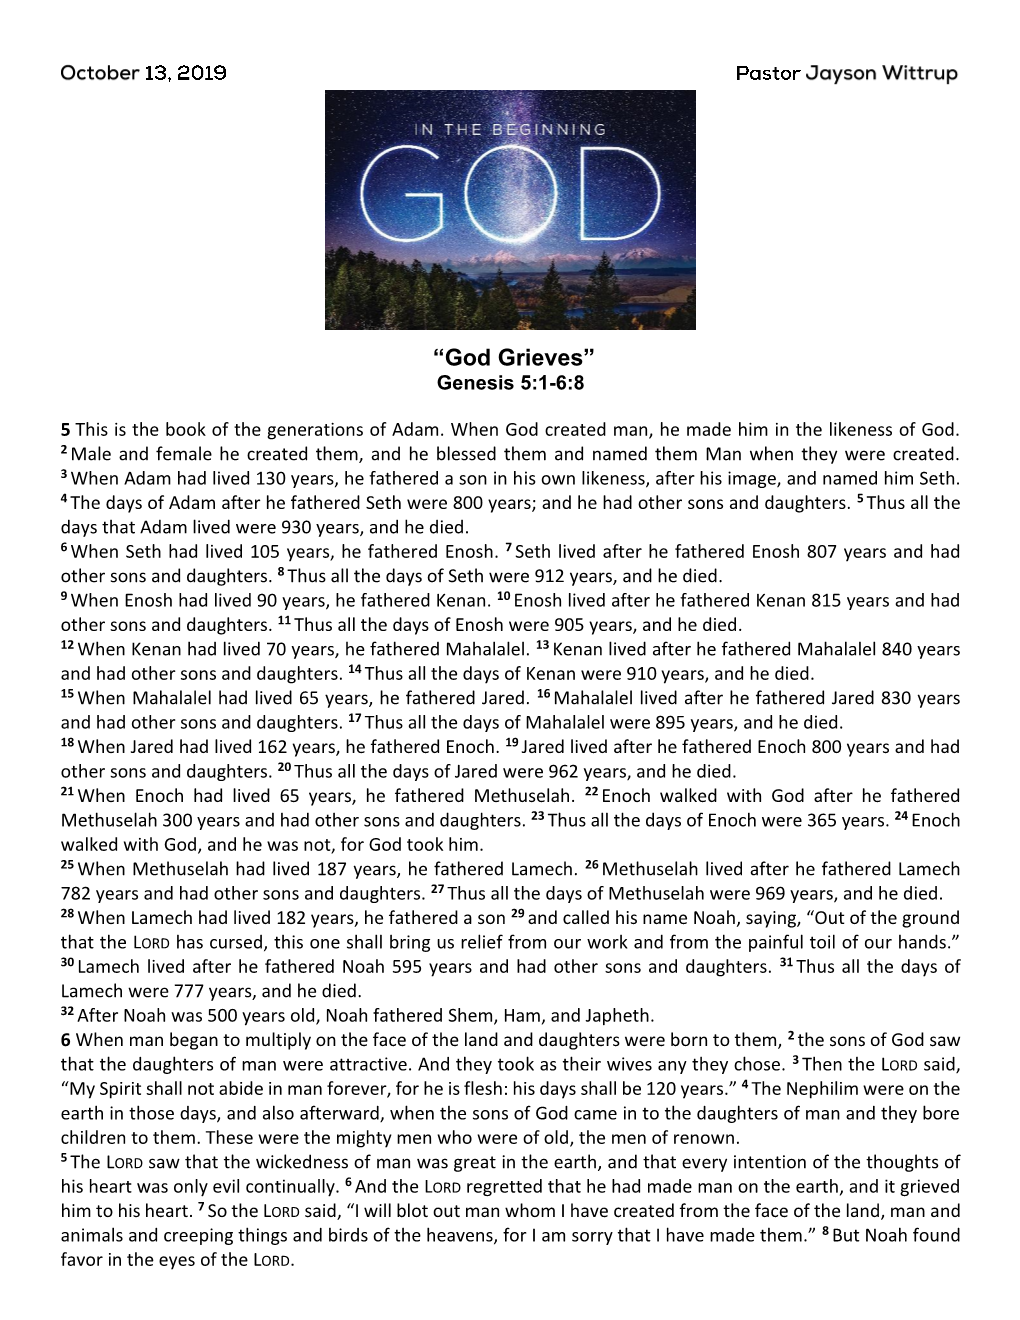 “God Grieves” Genesis 5:1-6:8